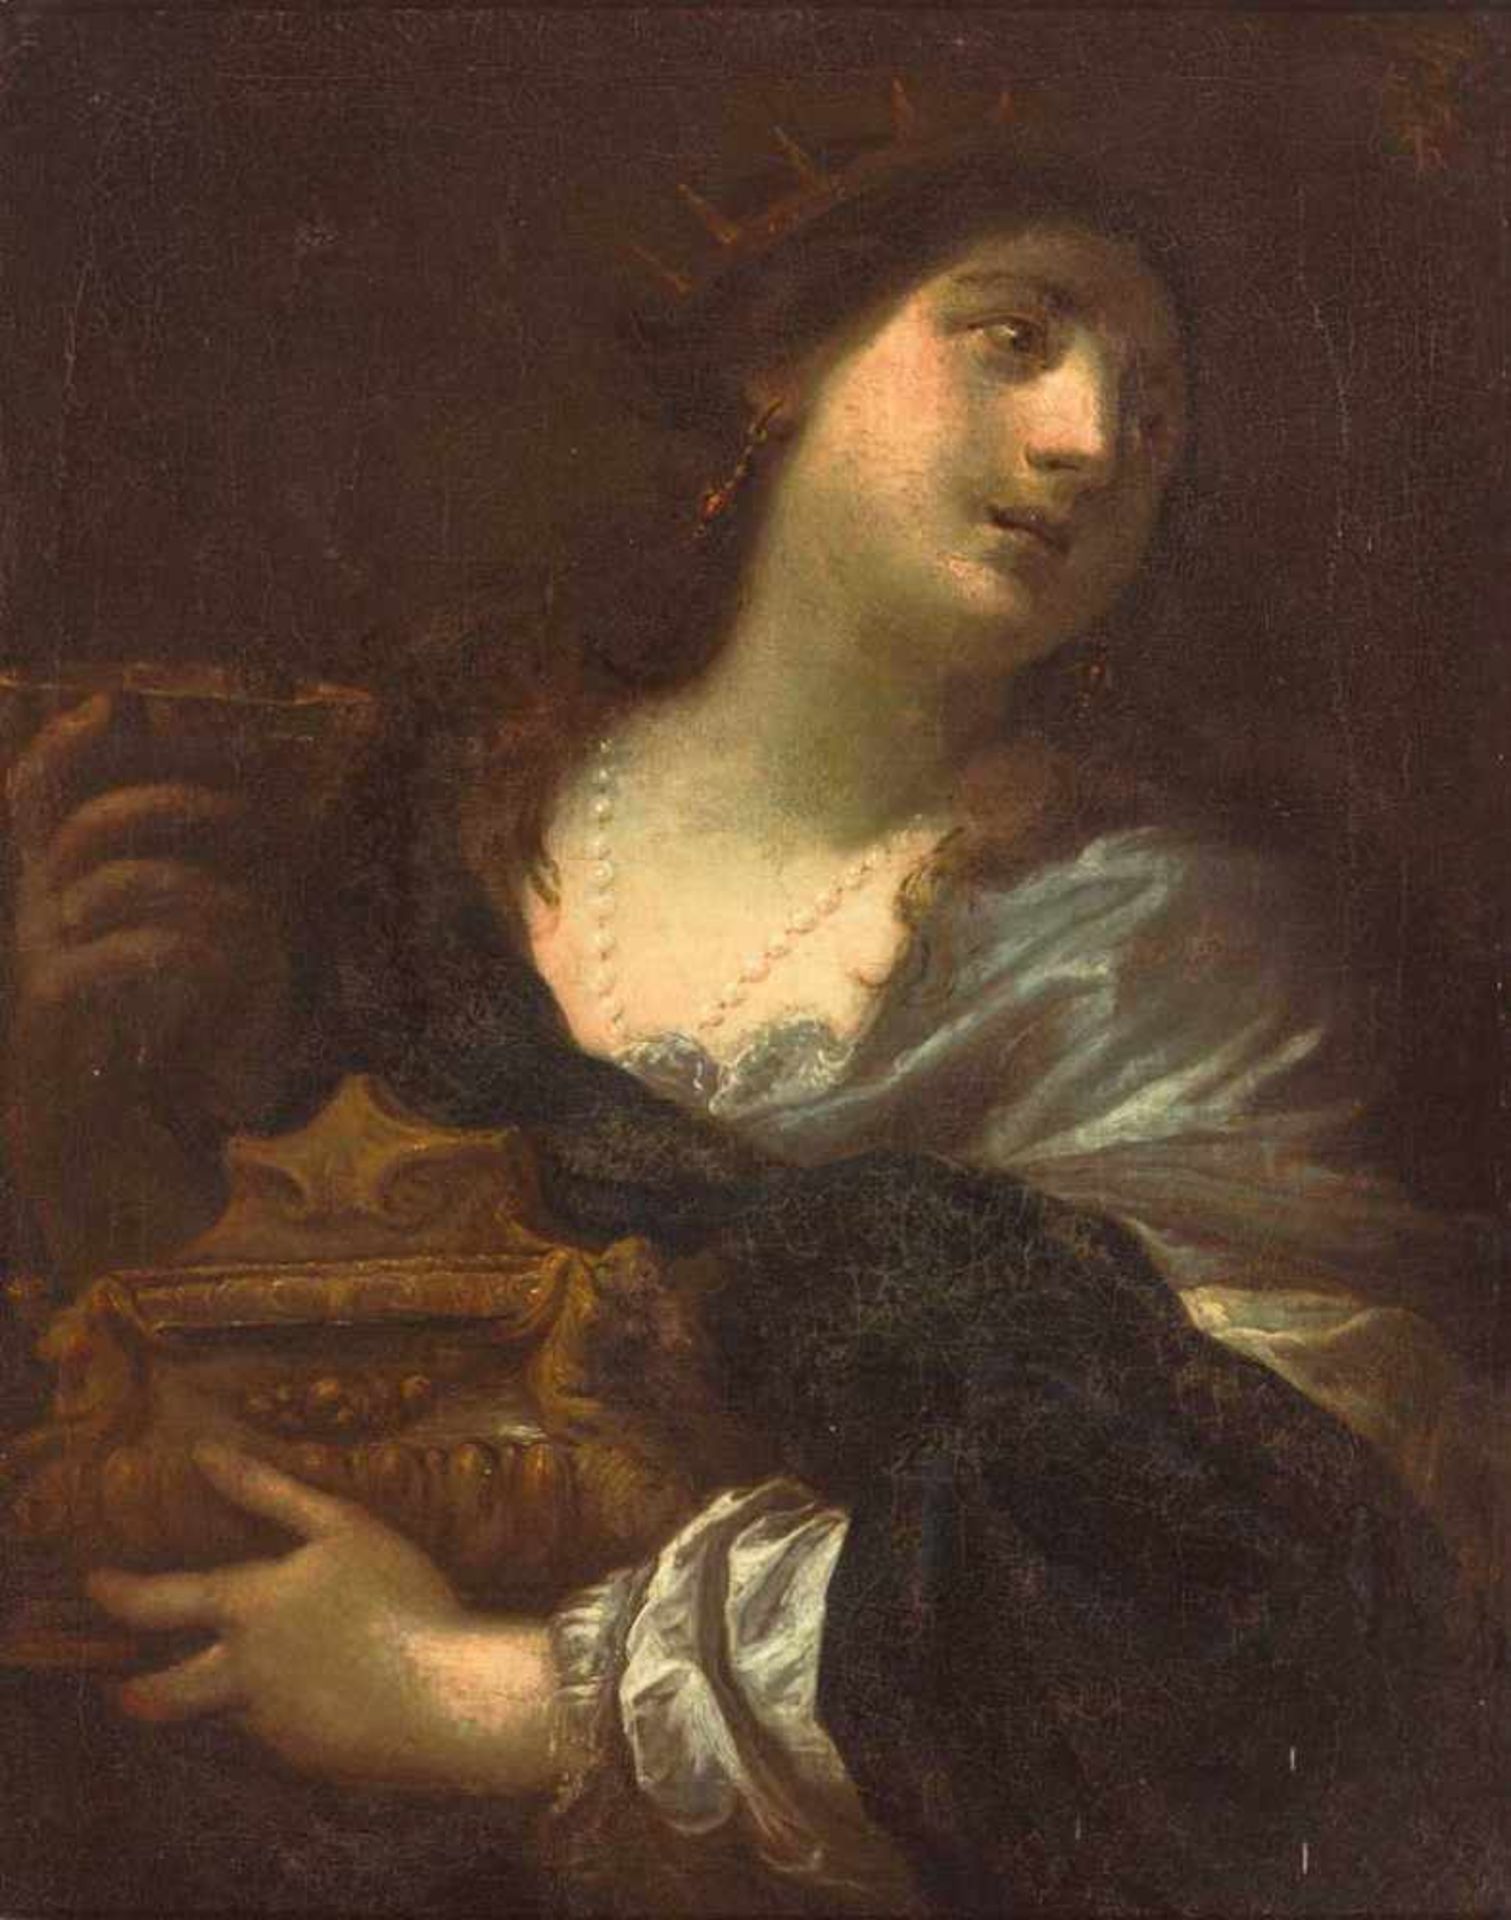 Maler um 1700. Bildnis der Artemisia II. von Karien, in den Händen die Urne mit der Asche ihres